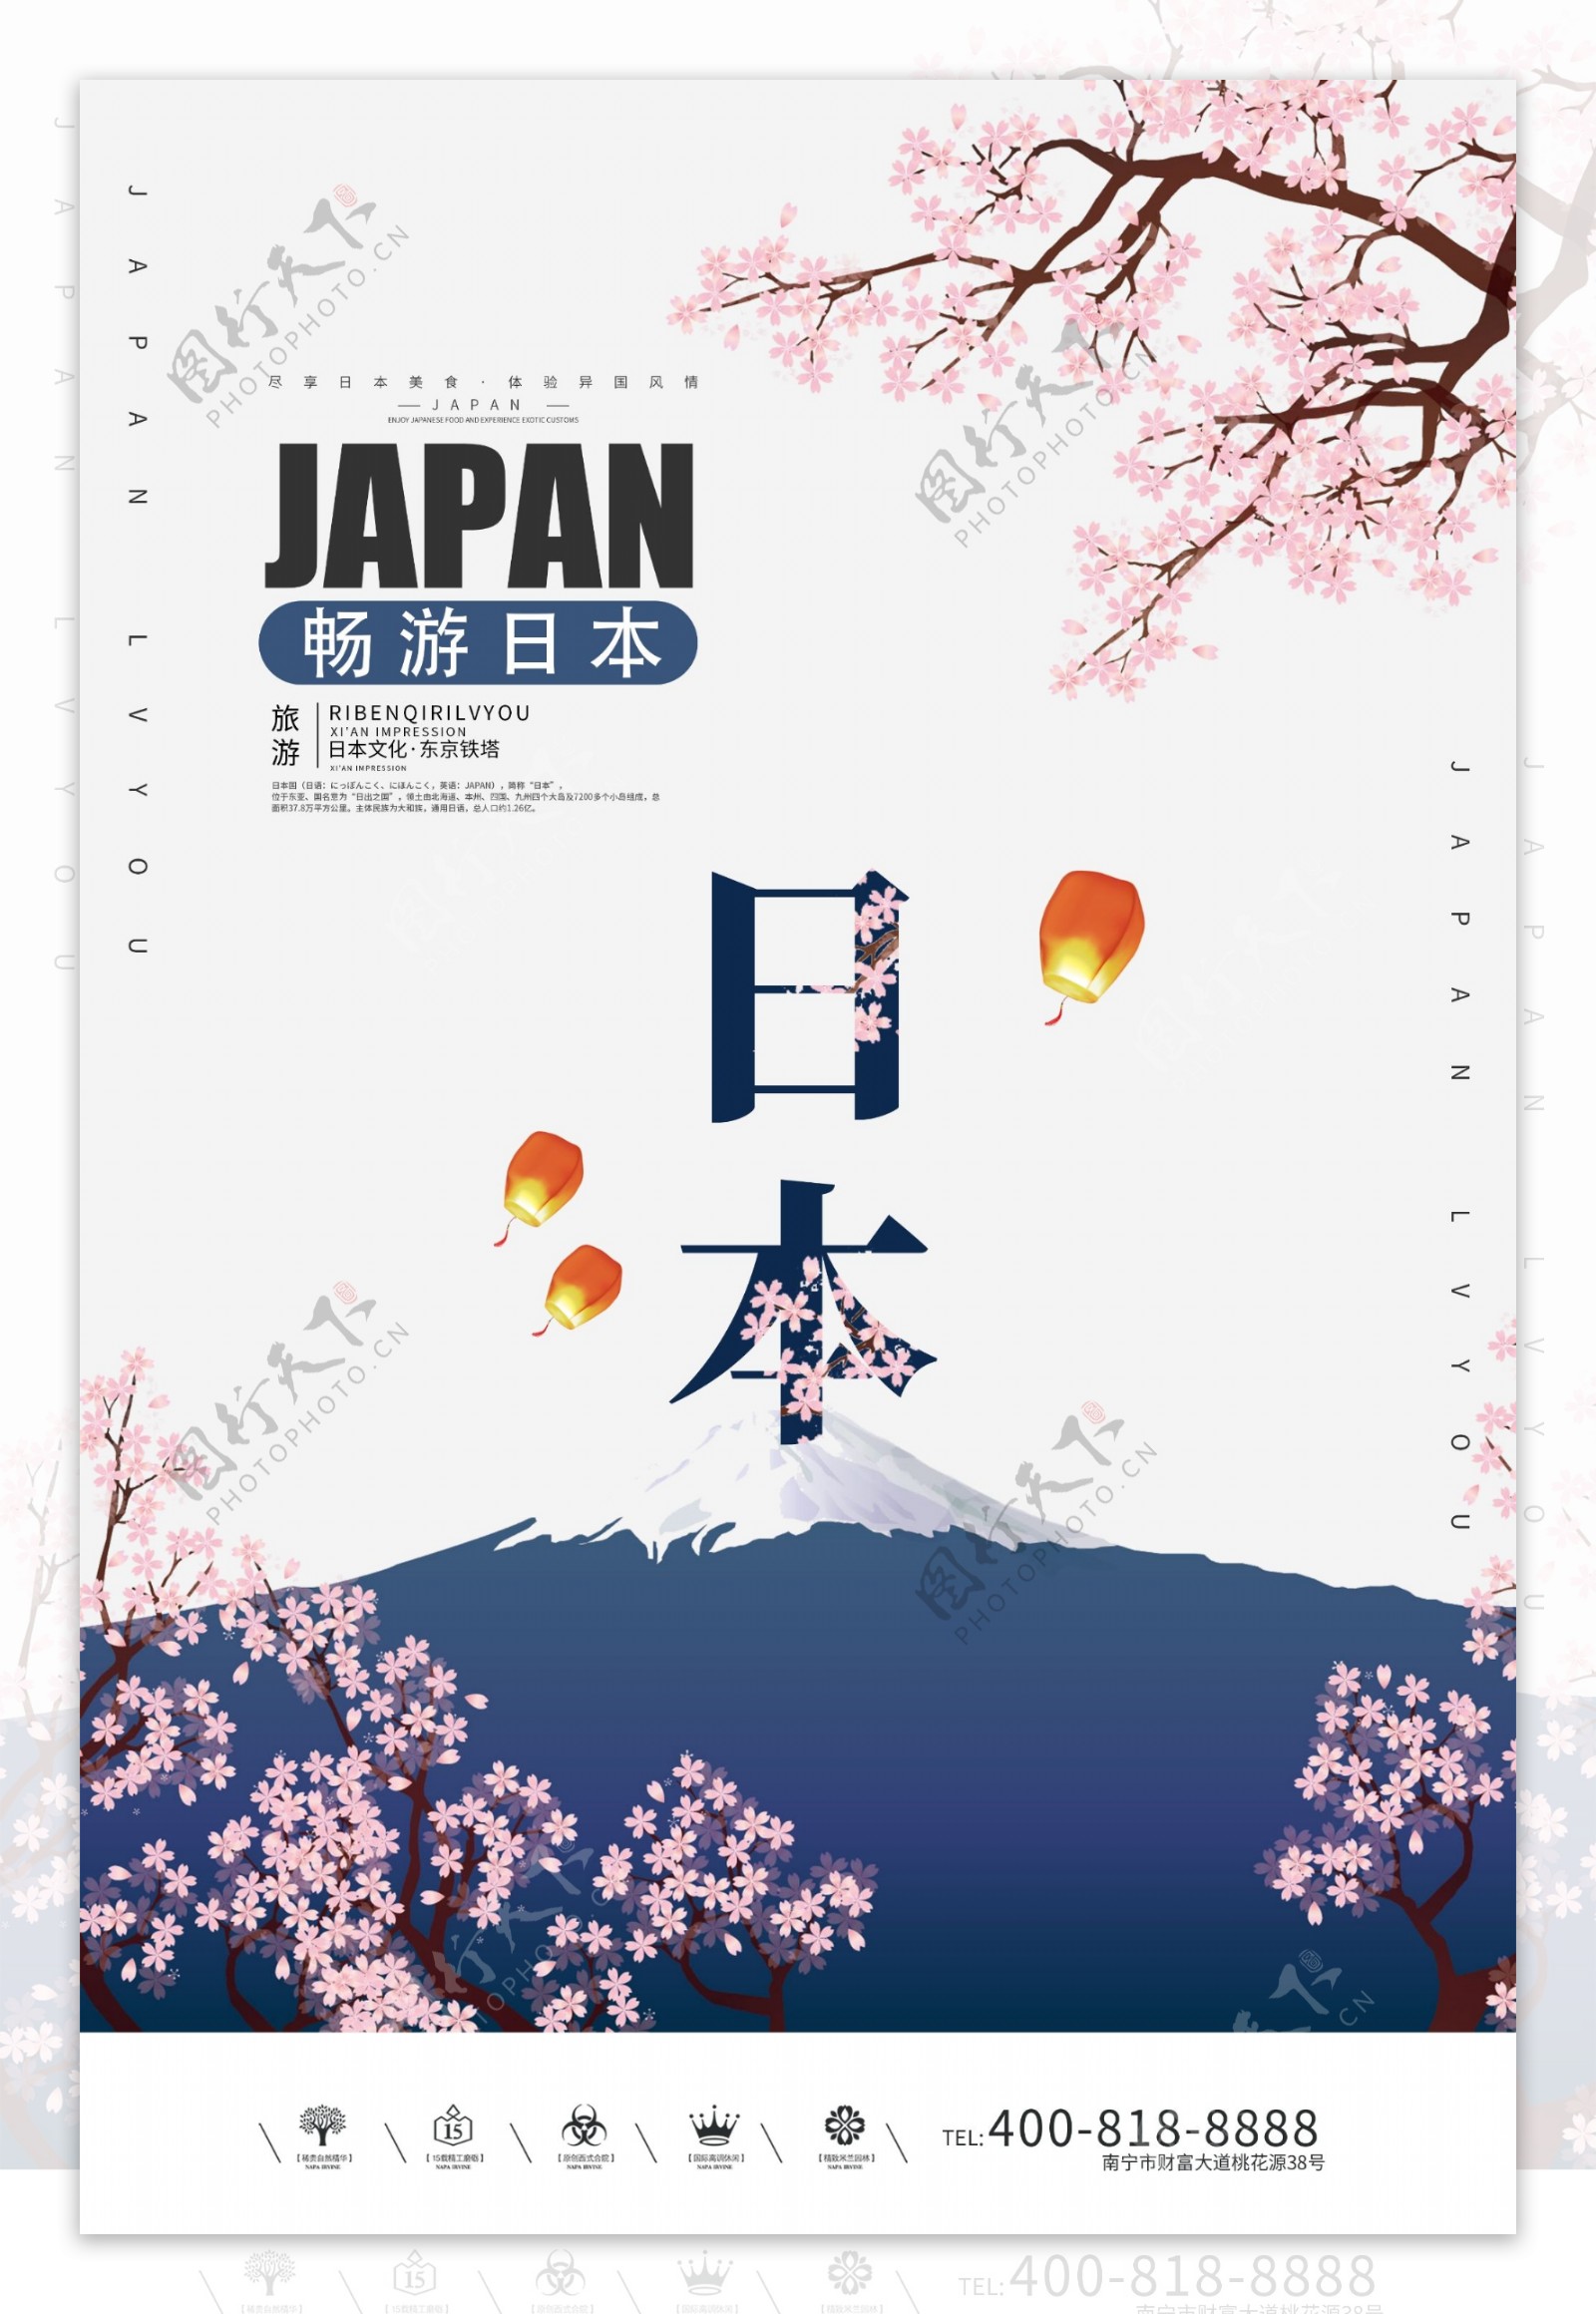 创意唯美风格日本旅游户外海报